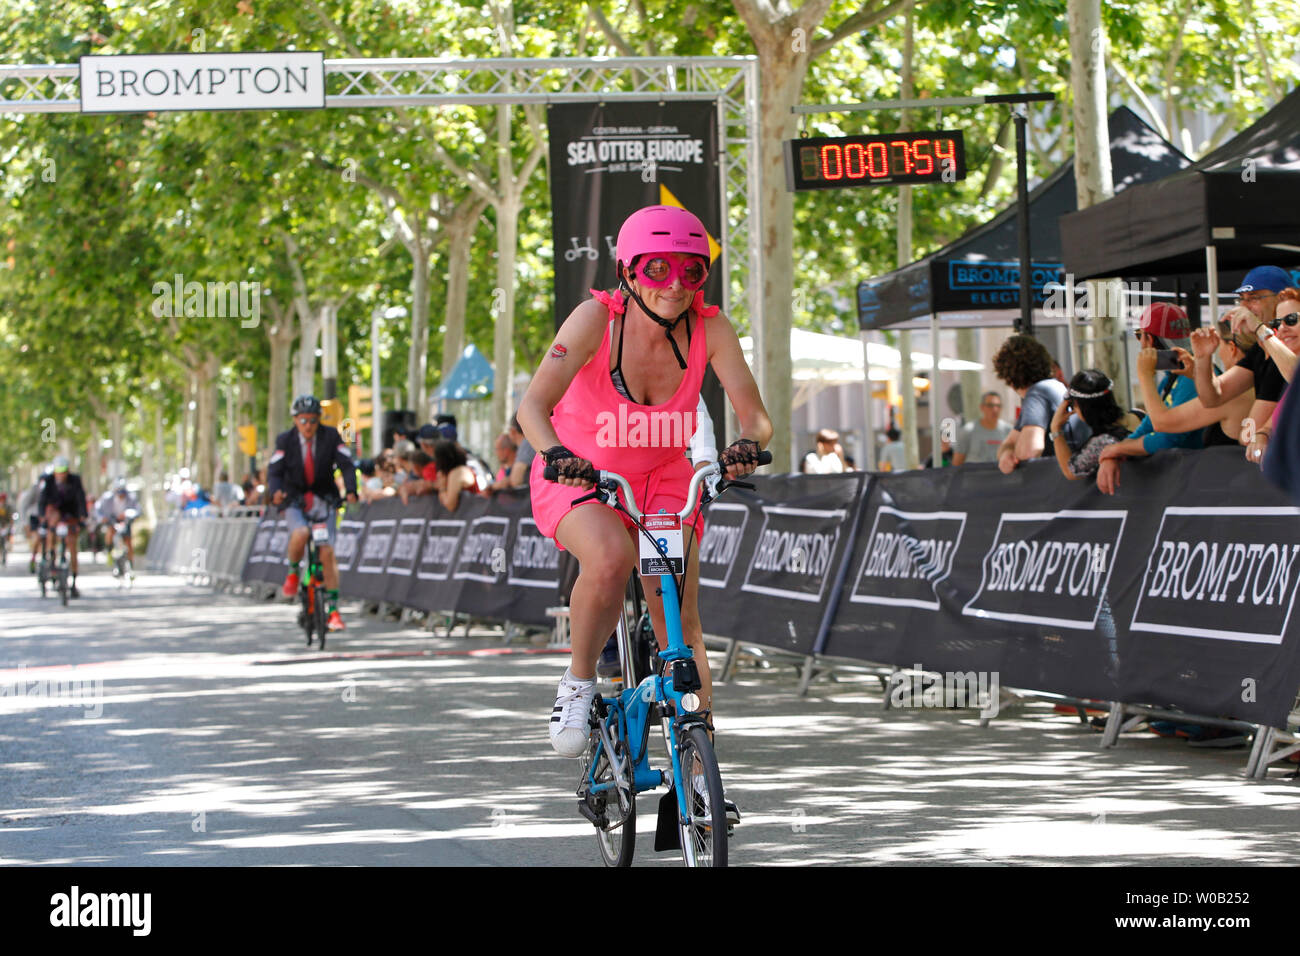 L'édition espagnole de 2019 du Championnat du Monde de Brompton vélos pliants avec une règle non-lieu au cours de la loutre de mer Bike Festival à Gérone, Espagne Banque D'Images